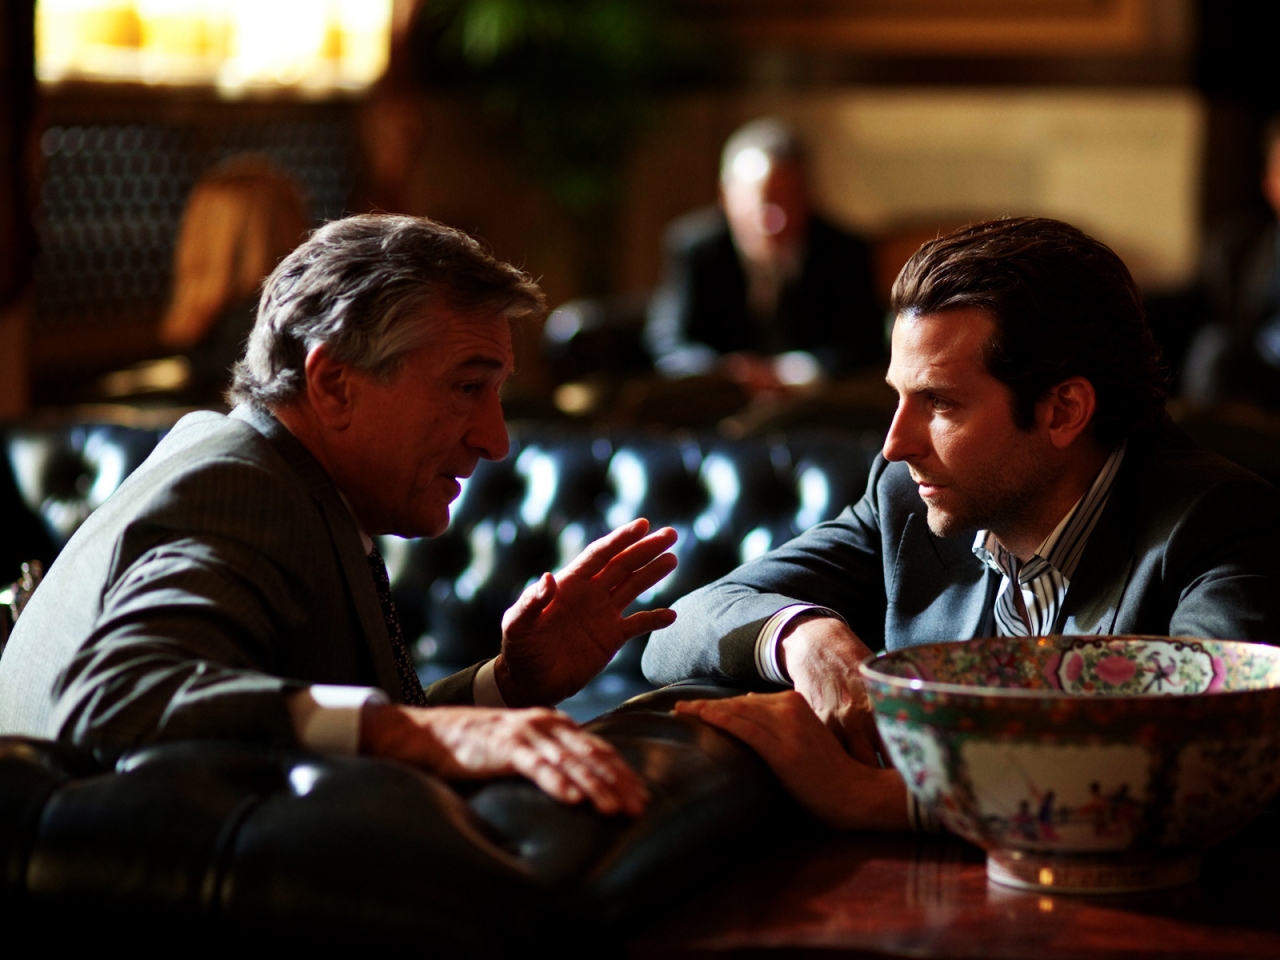 Bradley Cooper and Robert De Niro for 1280 x 960 resolution